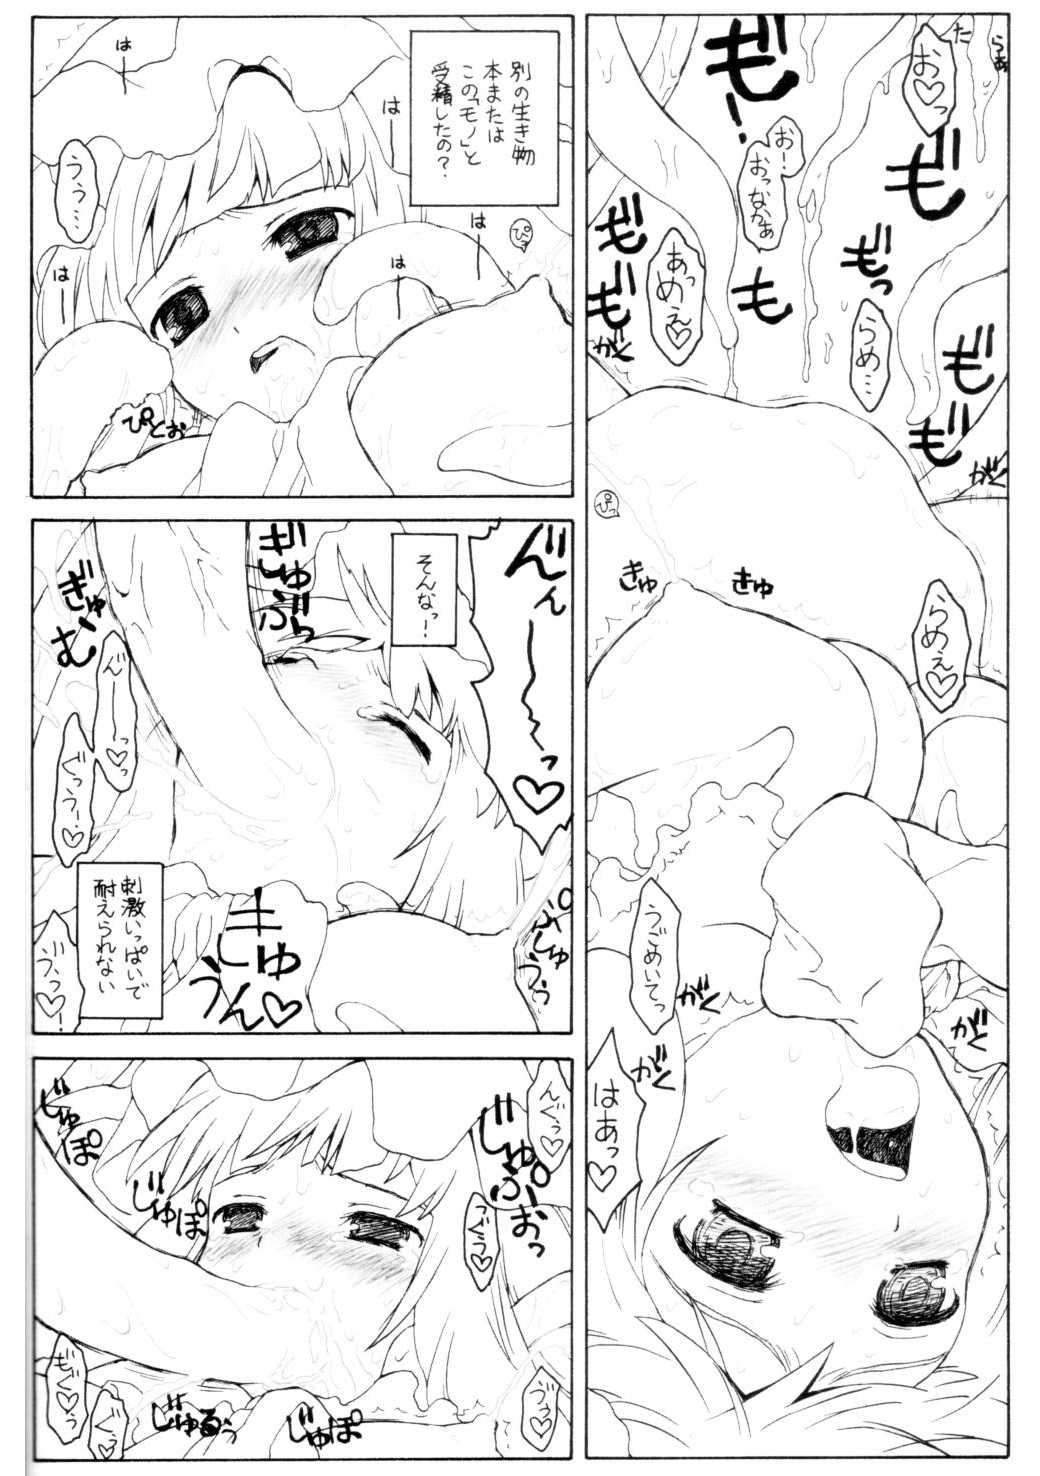 [ERA FEEL] pachuri no senrei 2 aru yakata no ichi nichi sono 2 (touhou)(C75) 